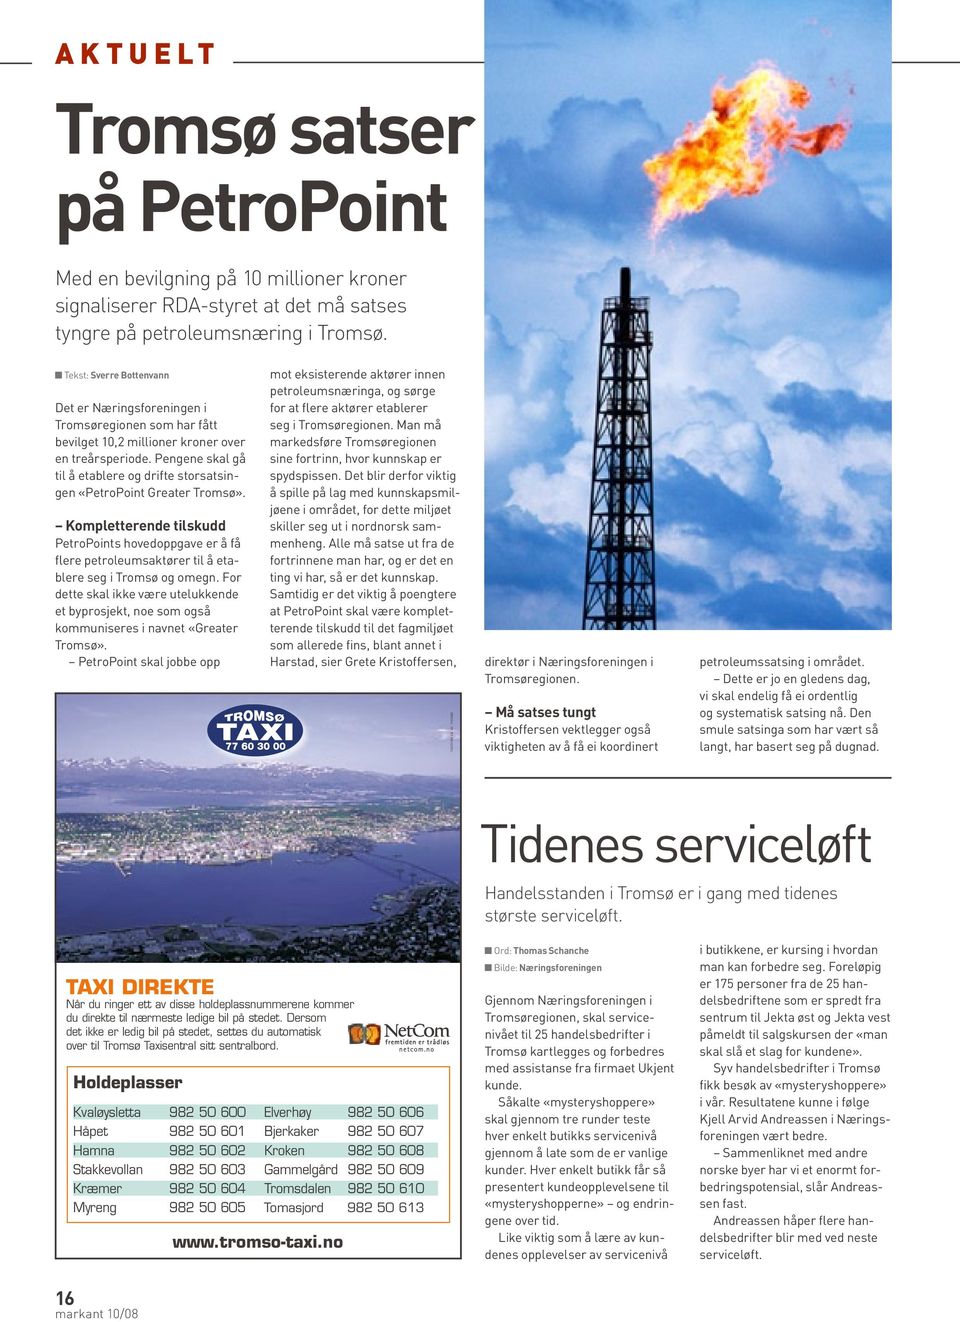 Pengene skal gå til å etablere og drifte storsatsingen «PetroPoint Greater Tromsø».